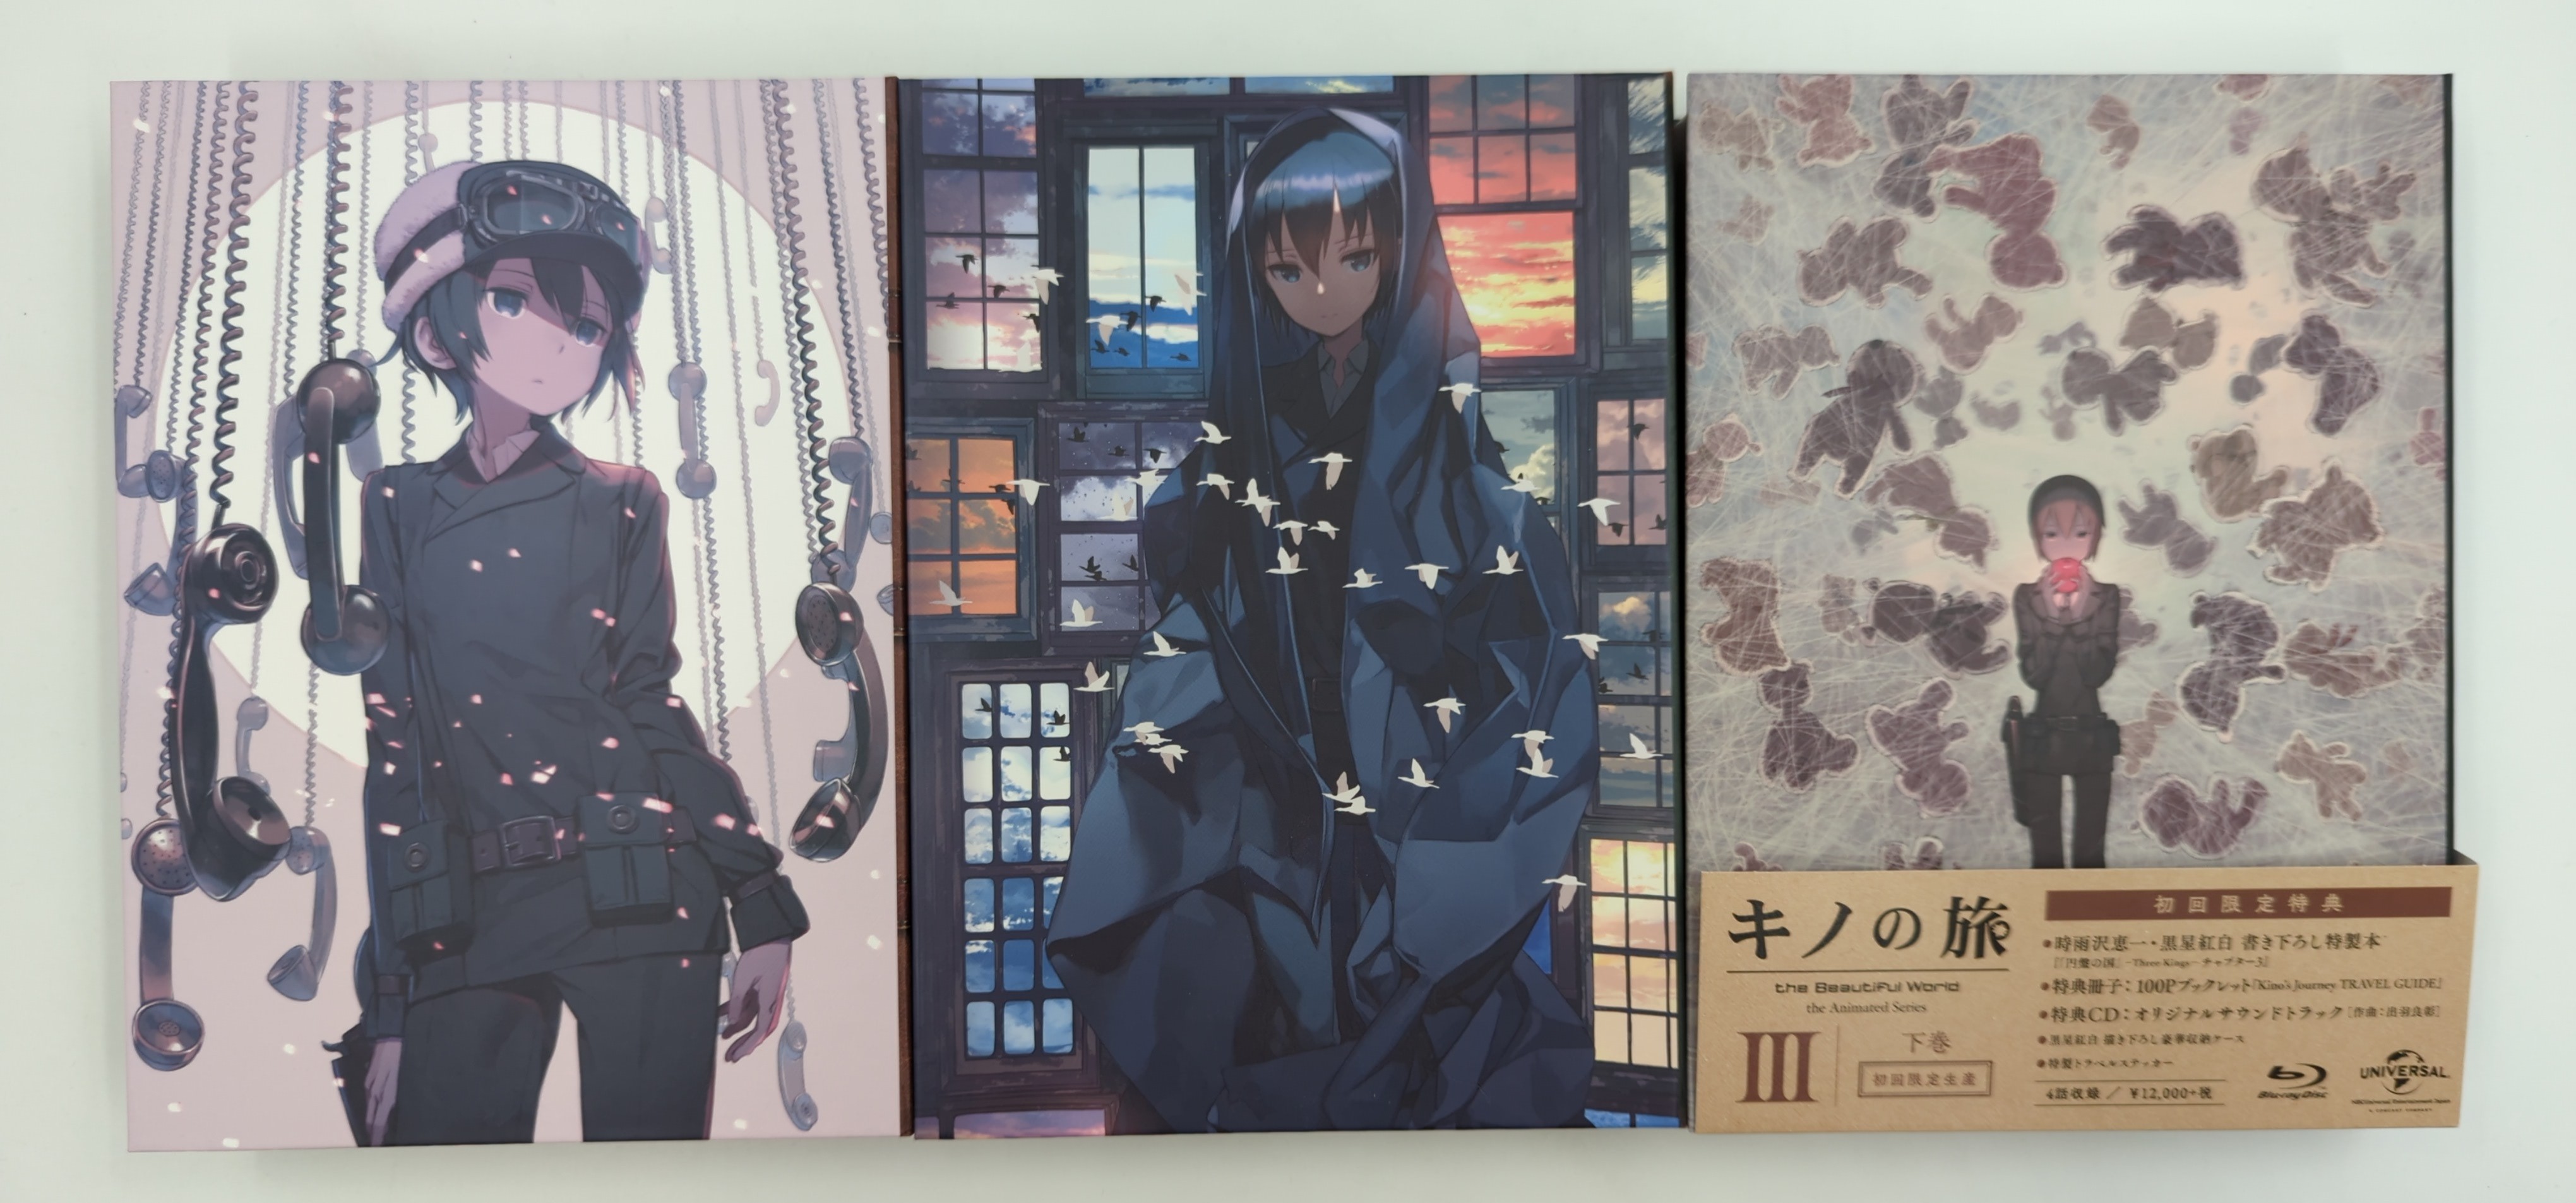 Kino's Journey Volume 2 (Kino no Tabi: The Beautiful World) - Manga Store 